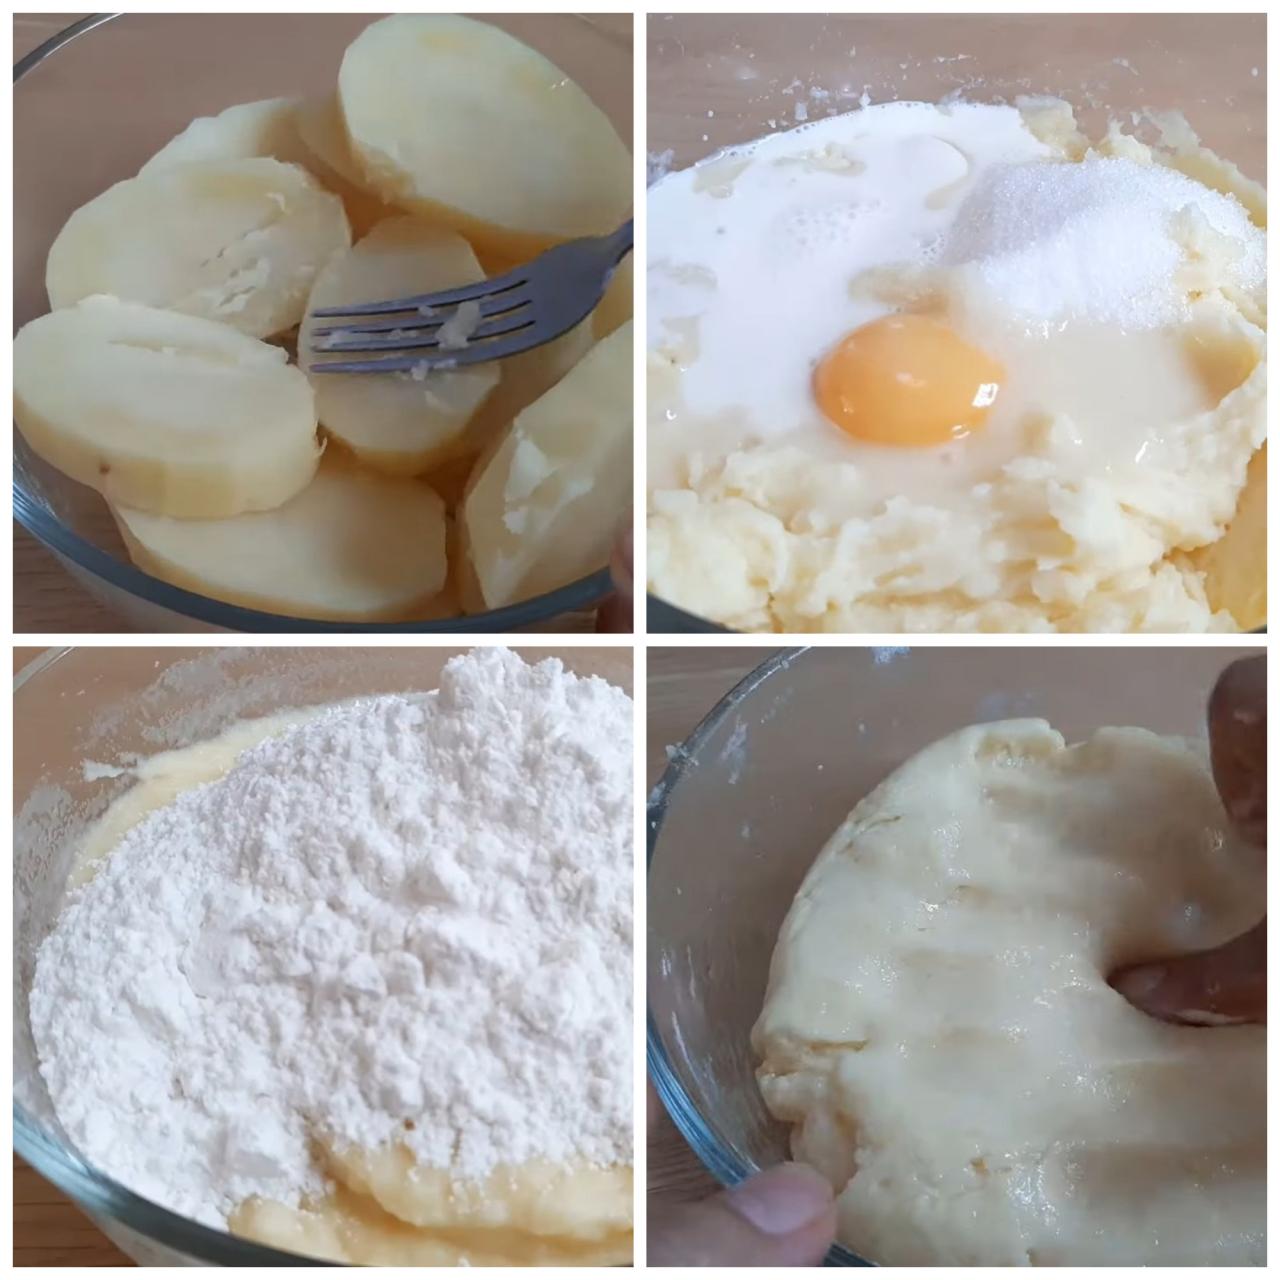 Sau khi hấp tán nhuyễn khoai tây, cho trứng và một số nguyên liệu gia vị vào trộn đều đến khi tạo thành khối